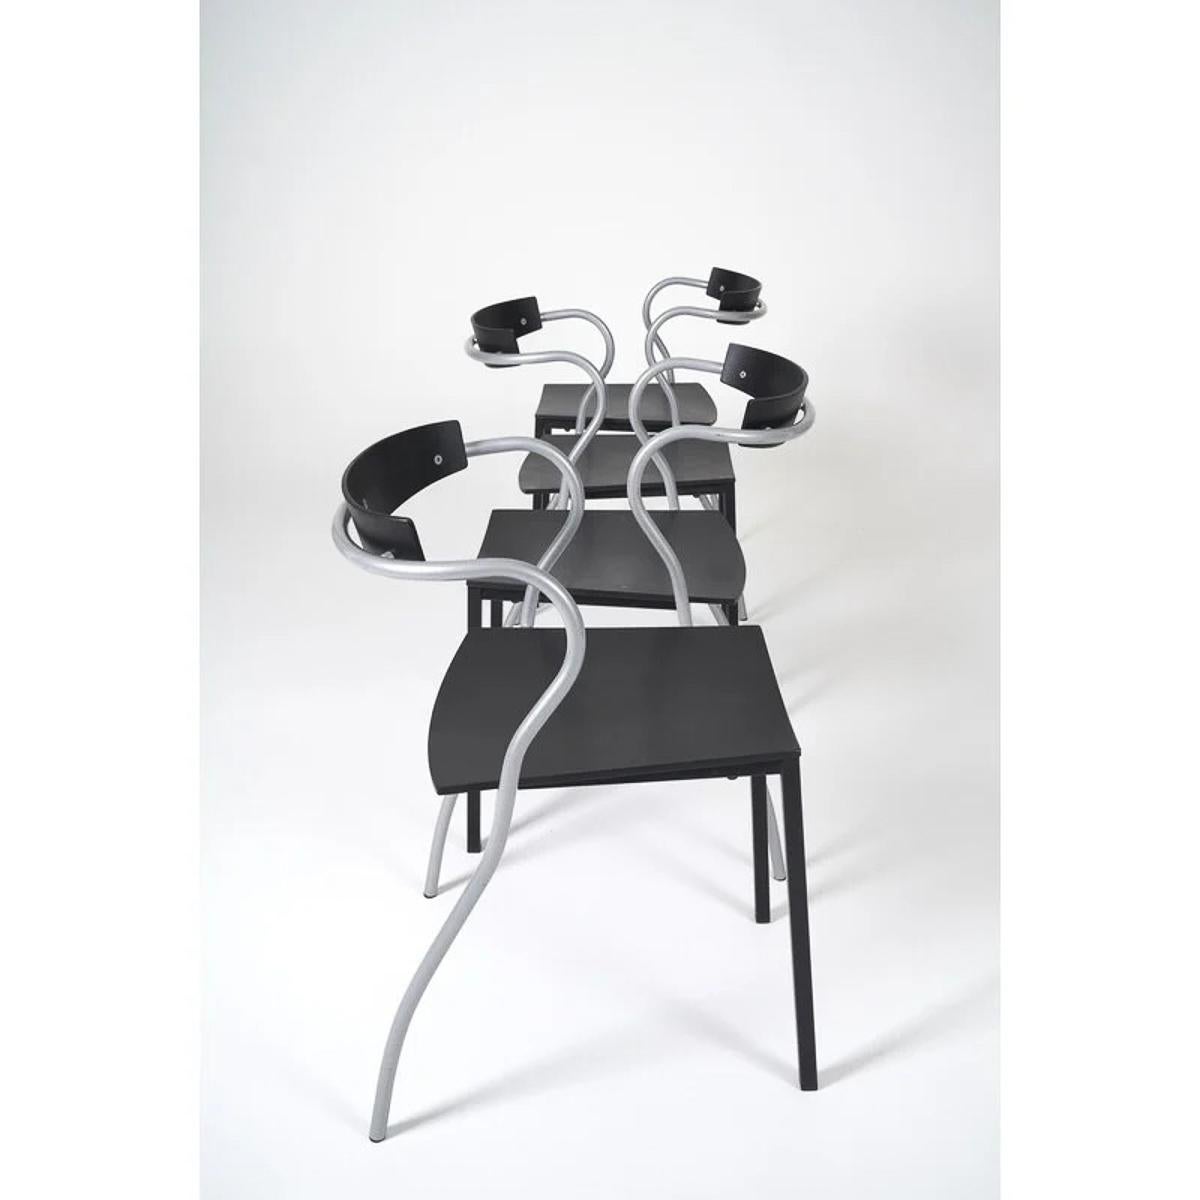 Une paire de chaises empilables conçues par Pascal Mourgue et fabriquées par Artelano à Paris au début des années 1990. Simples et discrètes, mais courbes et sexy, les chaises Rio sont fabriquées en contreplaqué courbé émaillé noir et en cadres